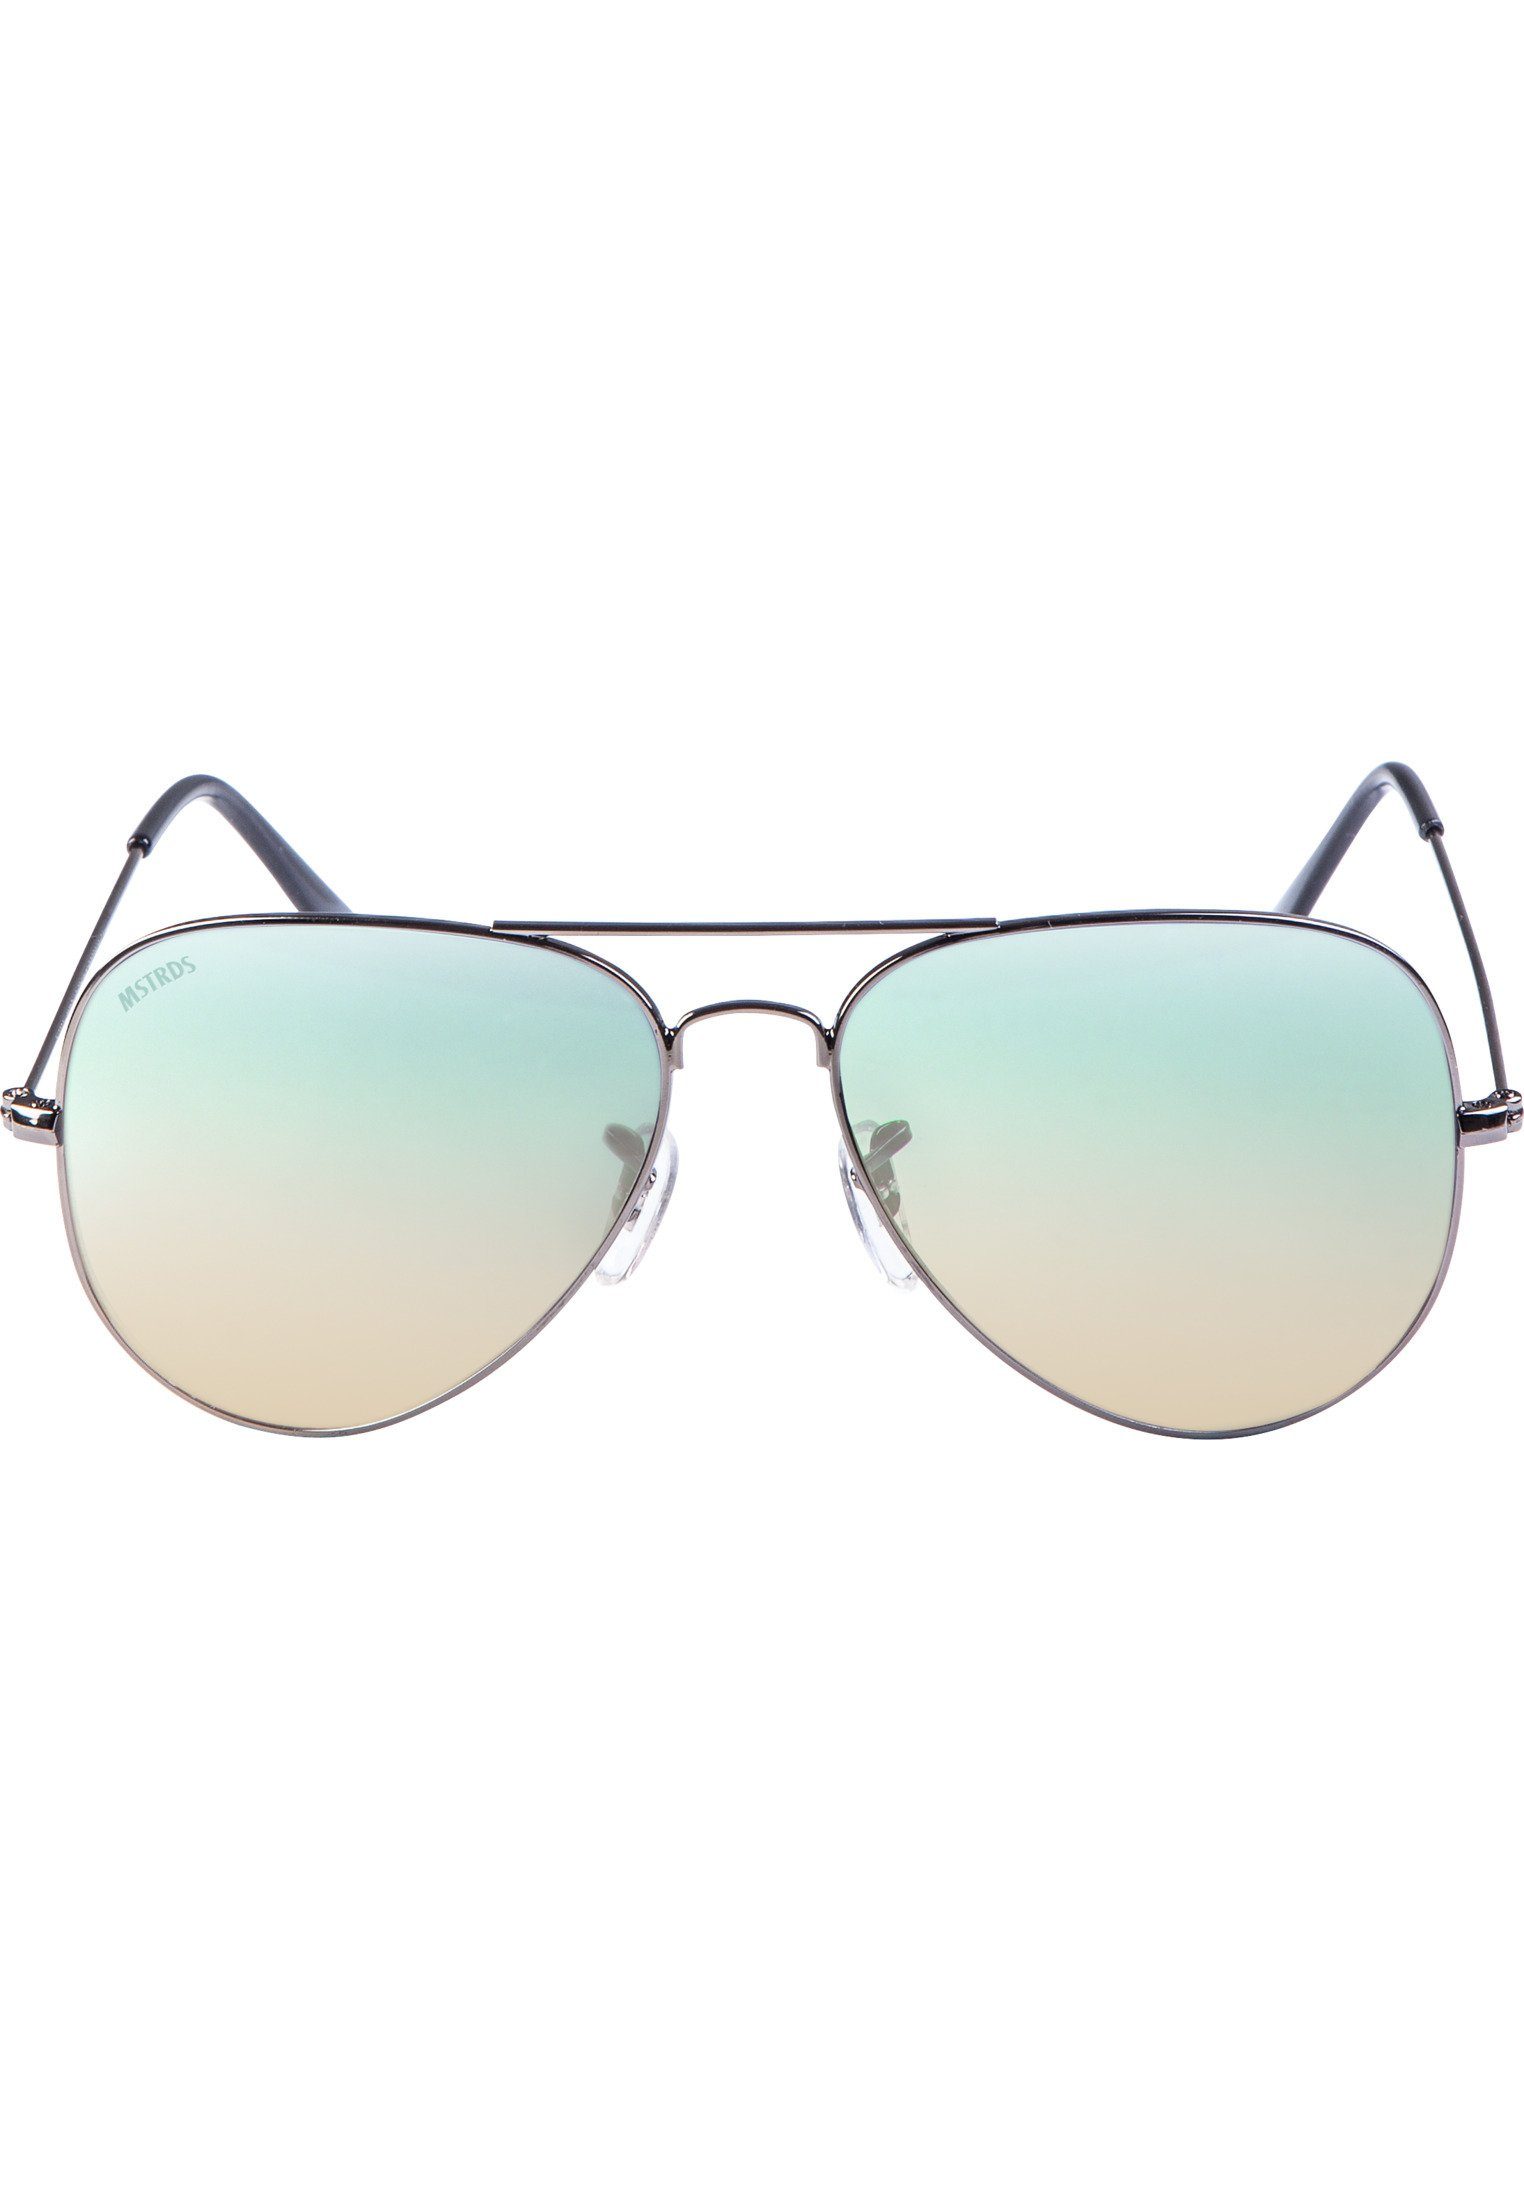 Sunglasses Sonnenbrille Accessoires PureAv MSTRDS